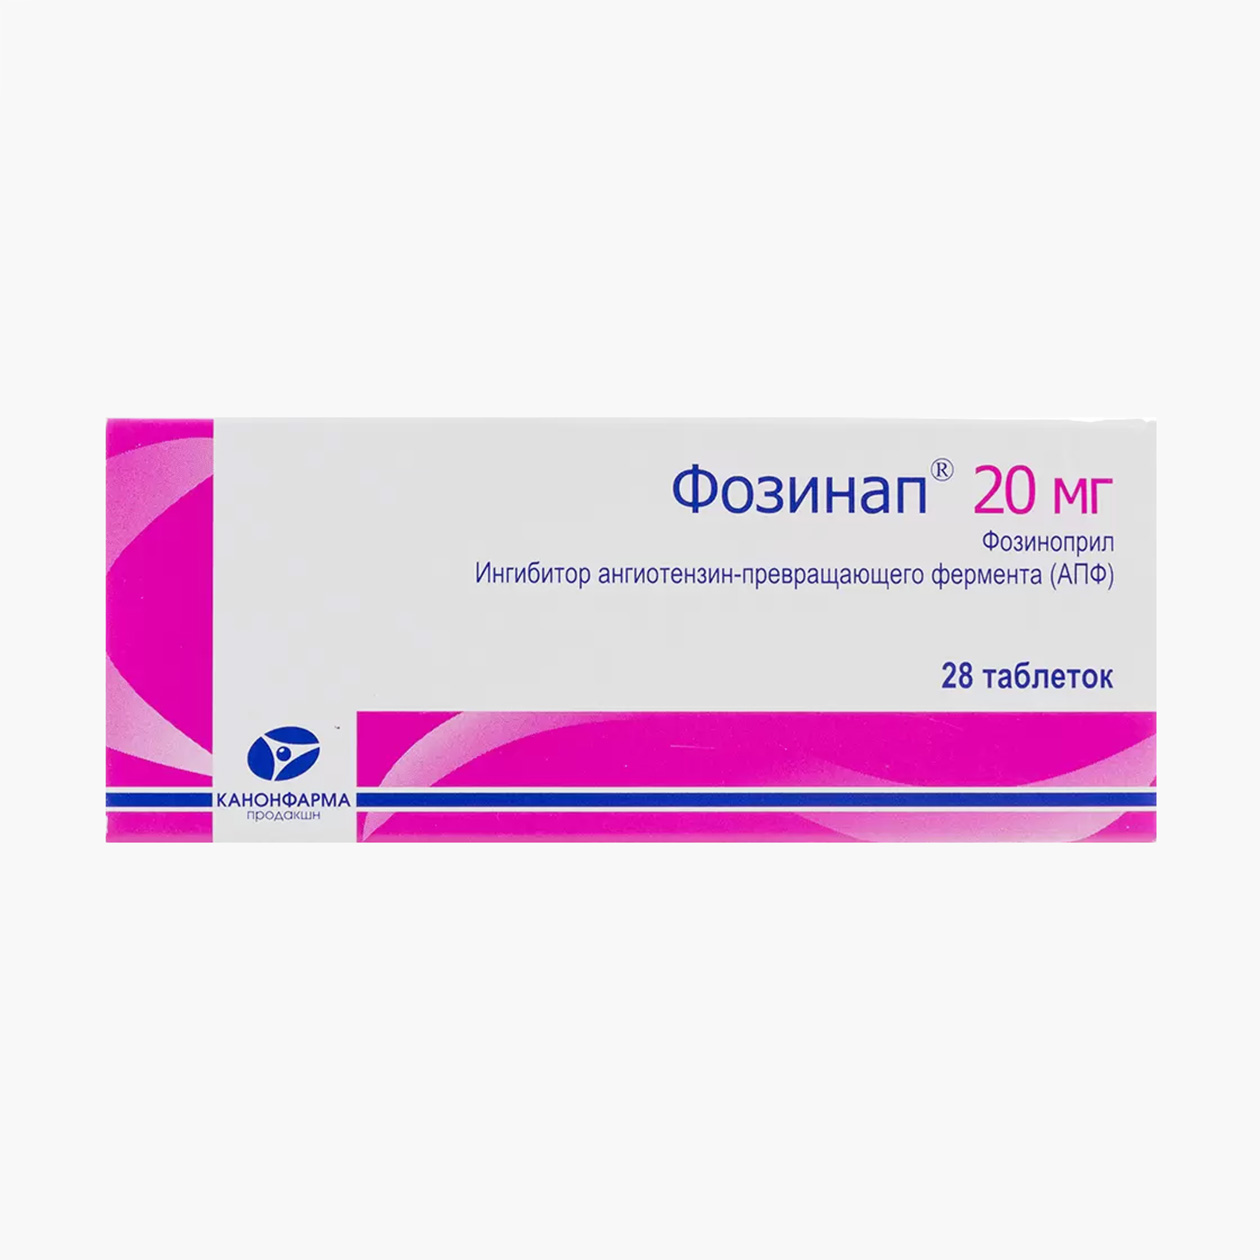 «Фозинап» по 20 мг. Аналог по действующему веществу стоит почти в два раза дешевле оригинала